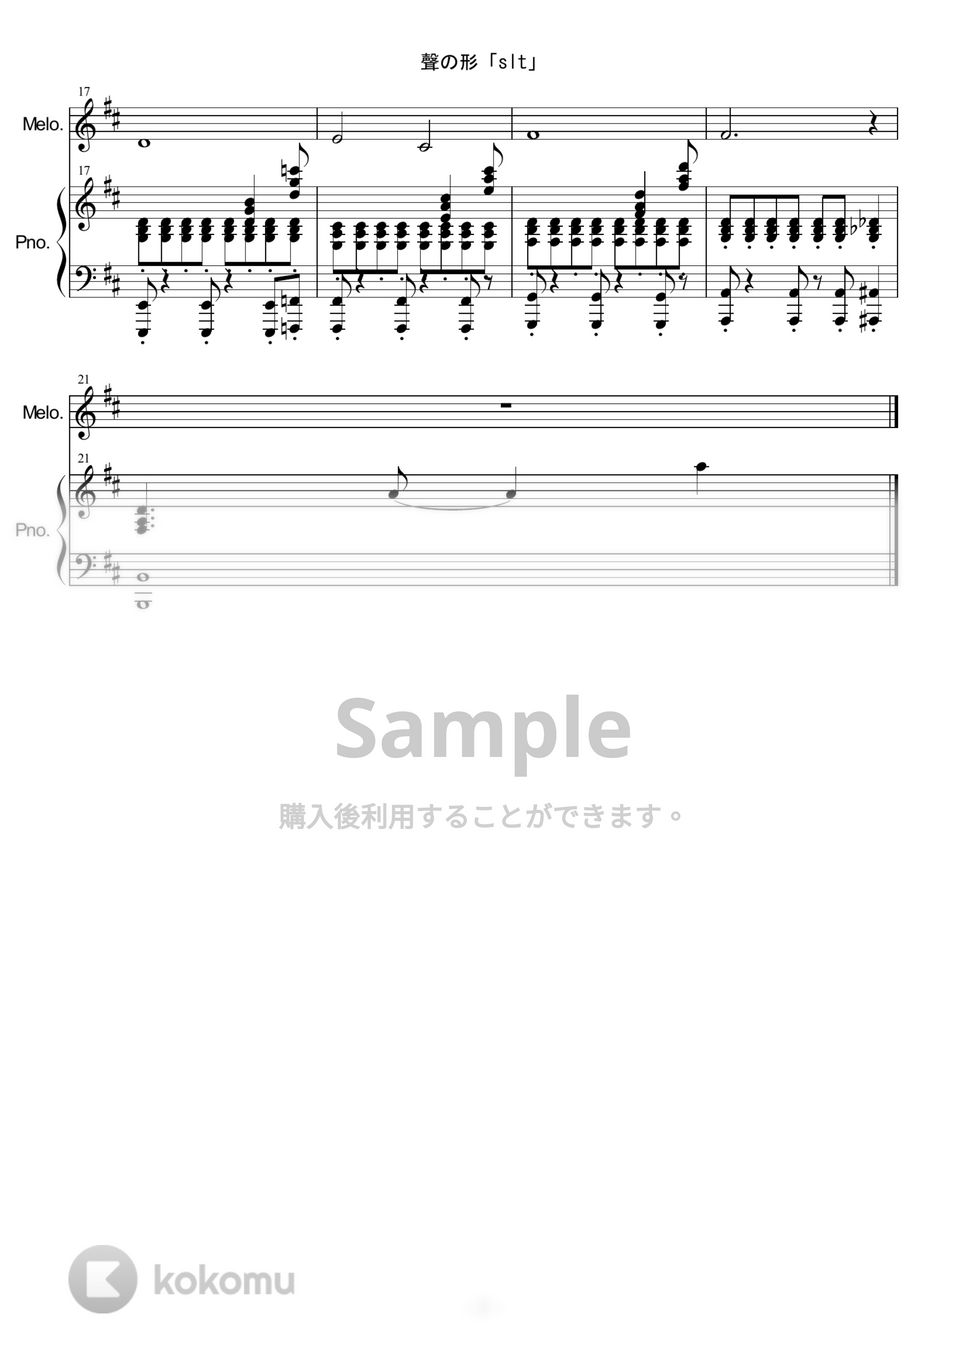 聲の形 - SLT by 音楽音泉